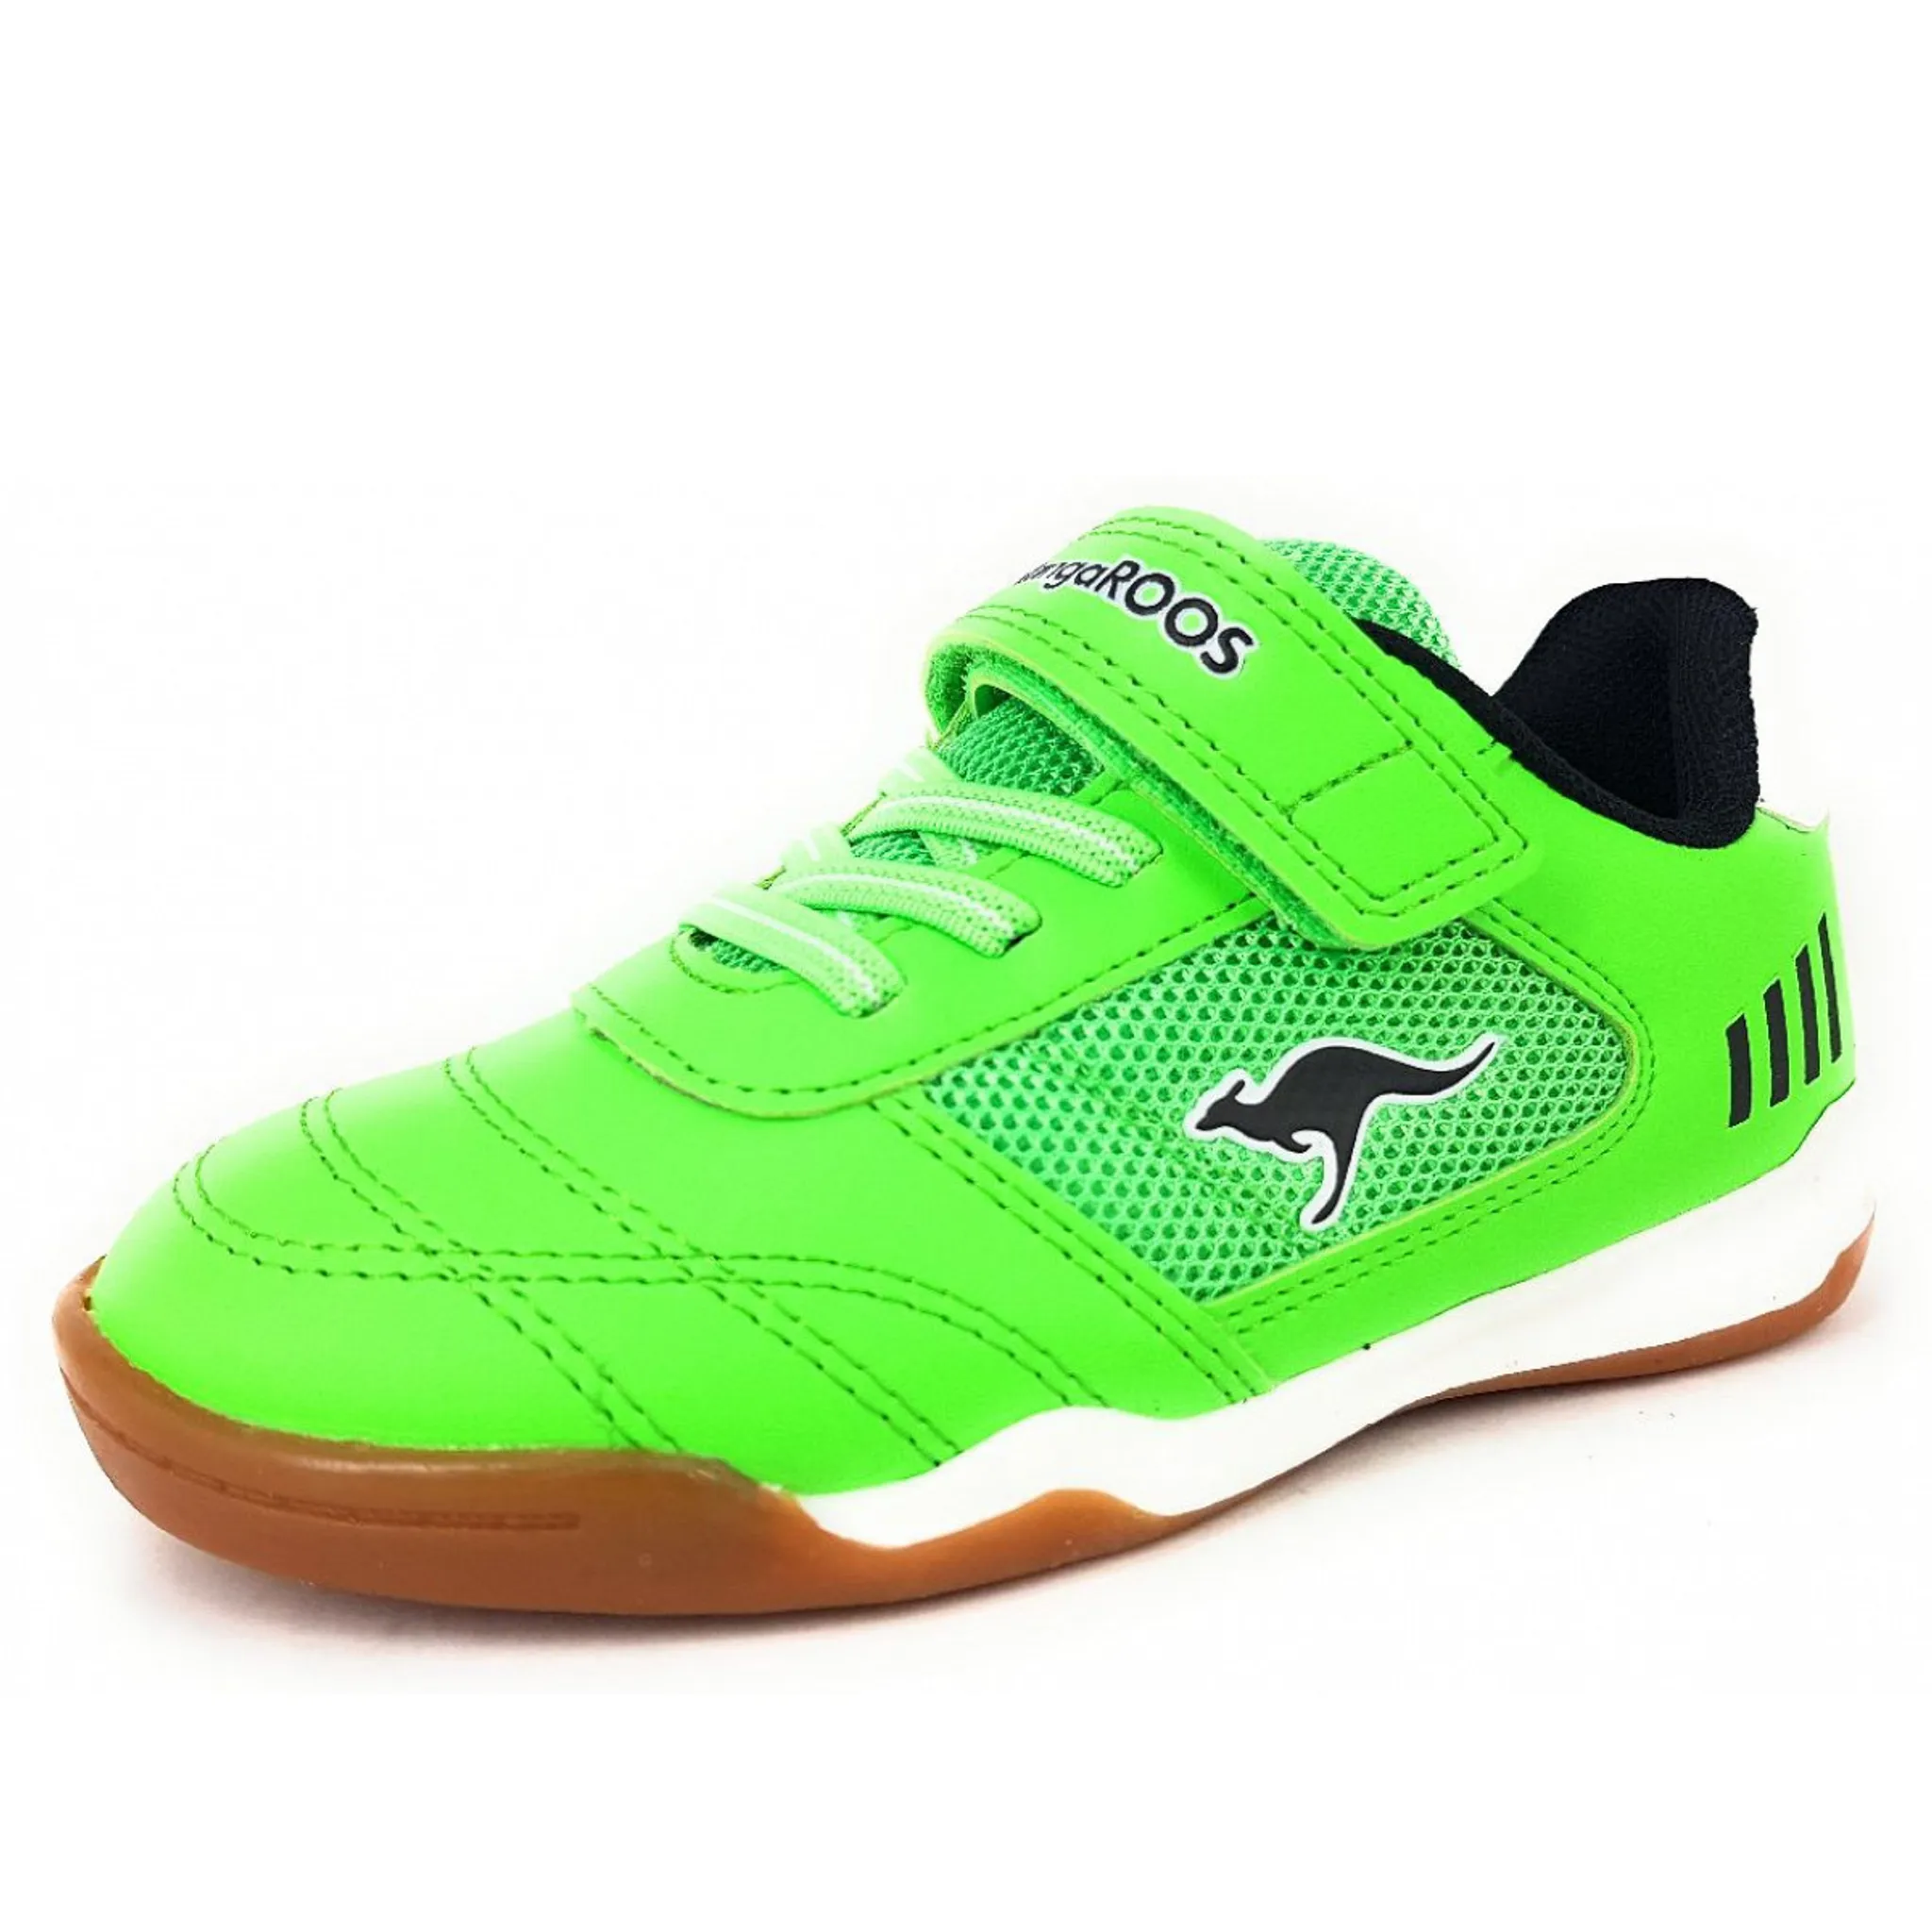 KangaRoos Sneaker Größe Farbe: 31, neon